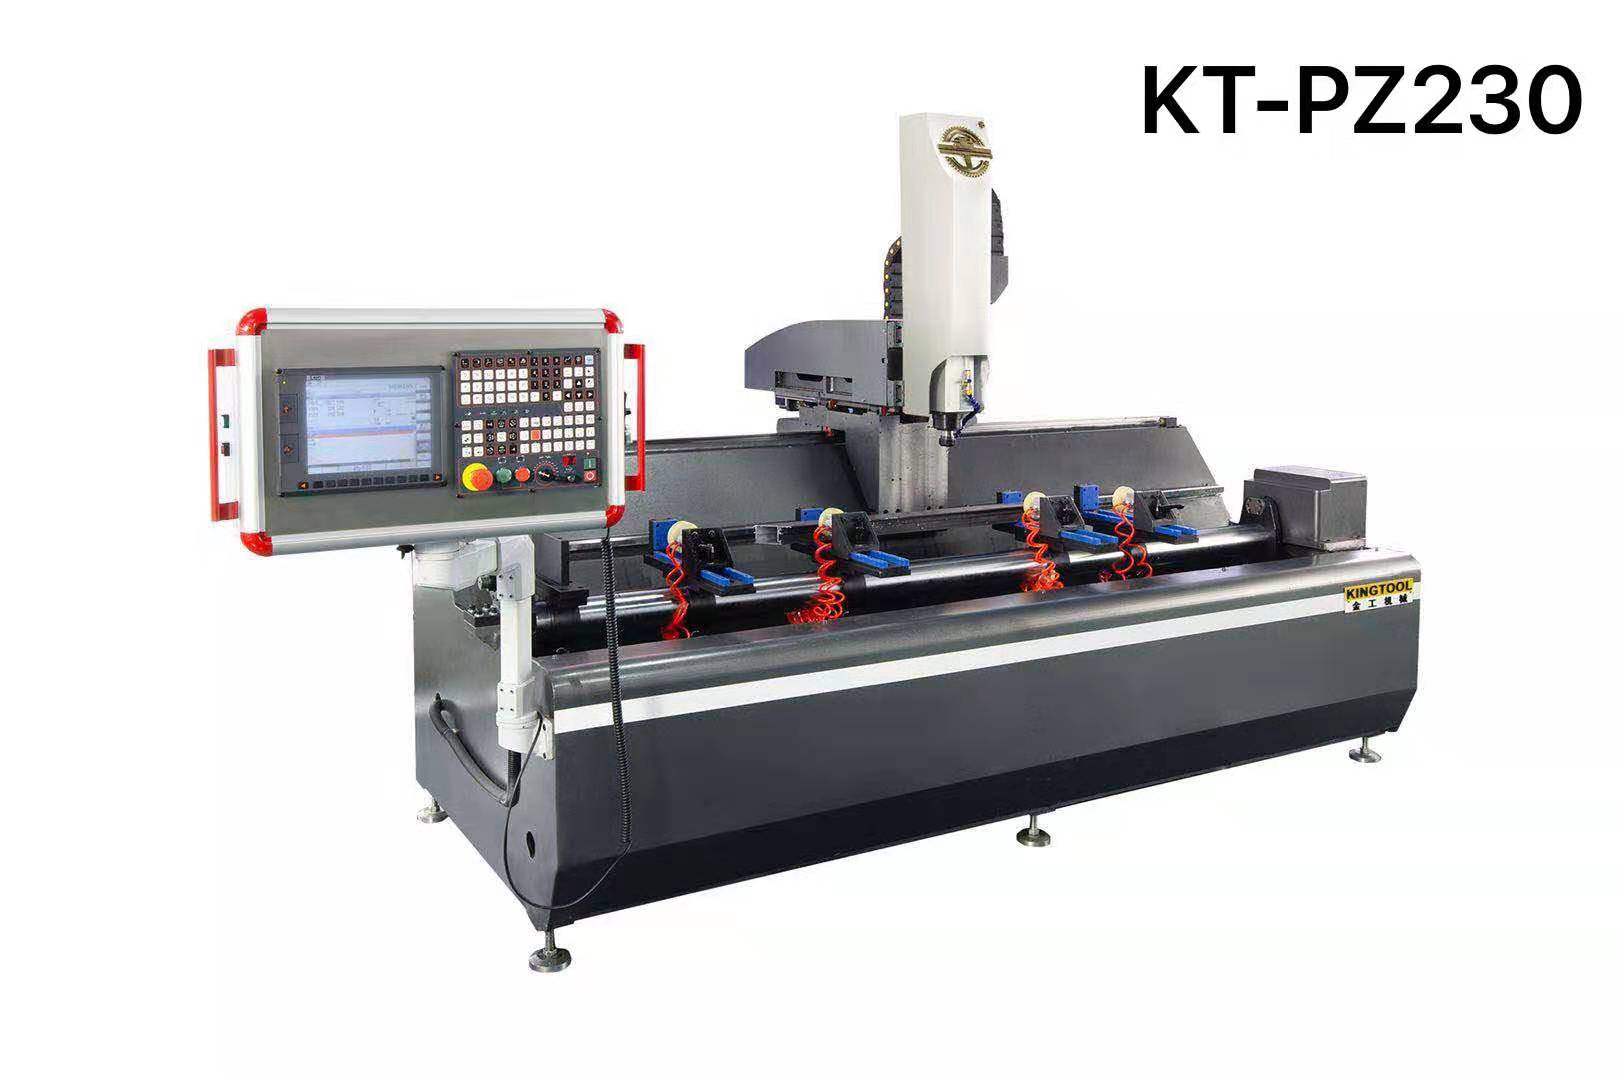 kingtool aluminium machinery Array image73